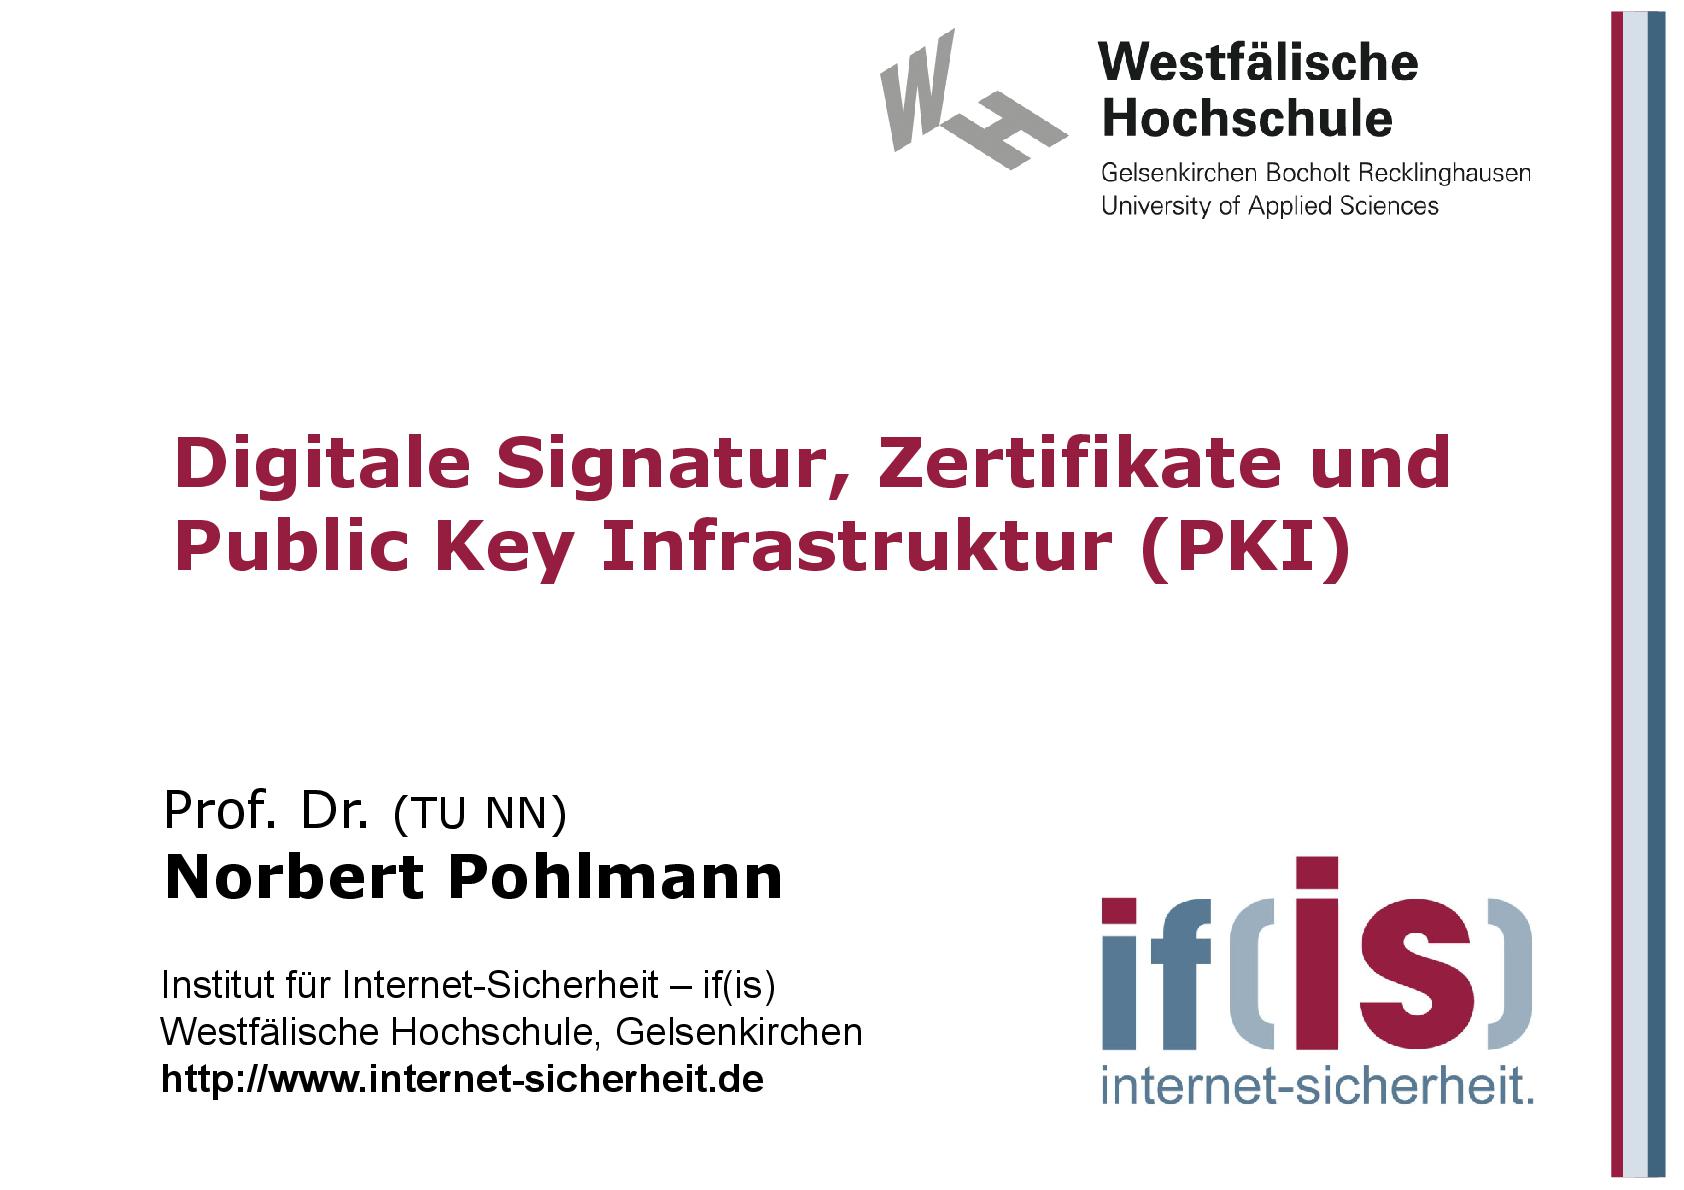 Digitale Signatur, Zertifikate und Public Key Infrastruktur (PKI) aus Vorlesungsreihe Cyber-Sicherheit